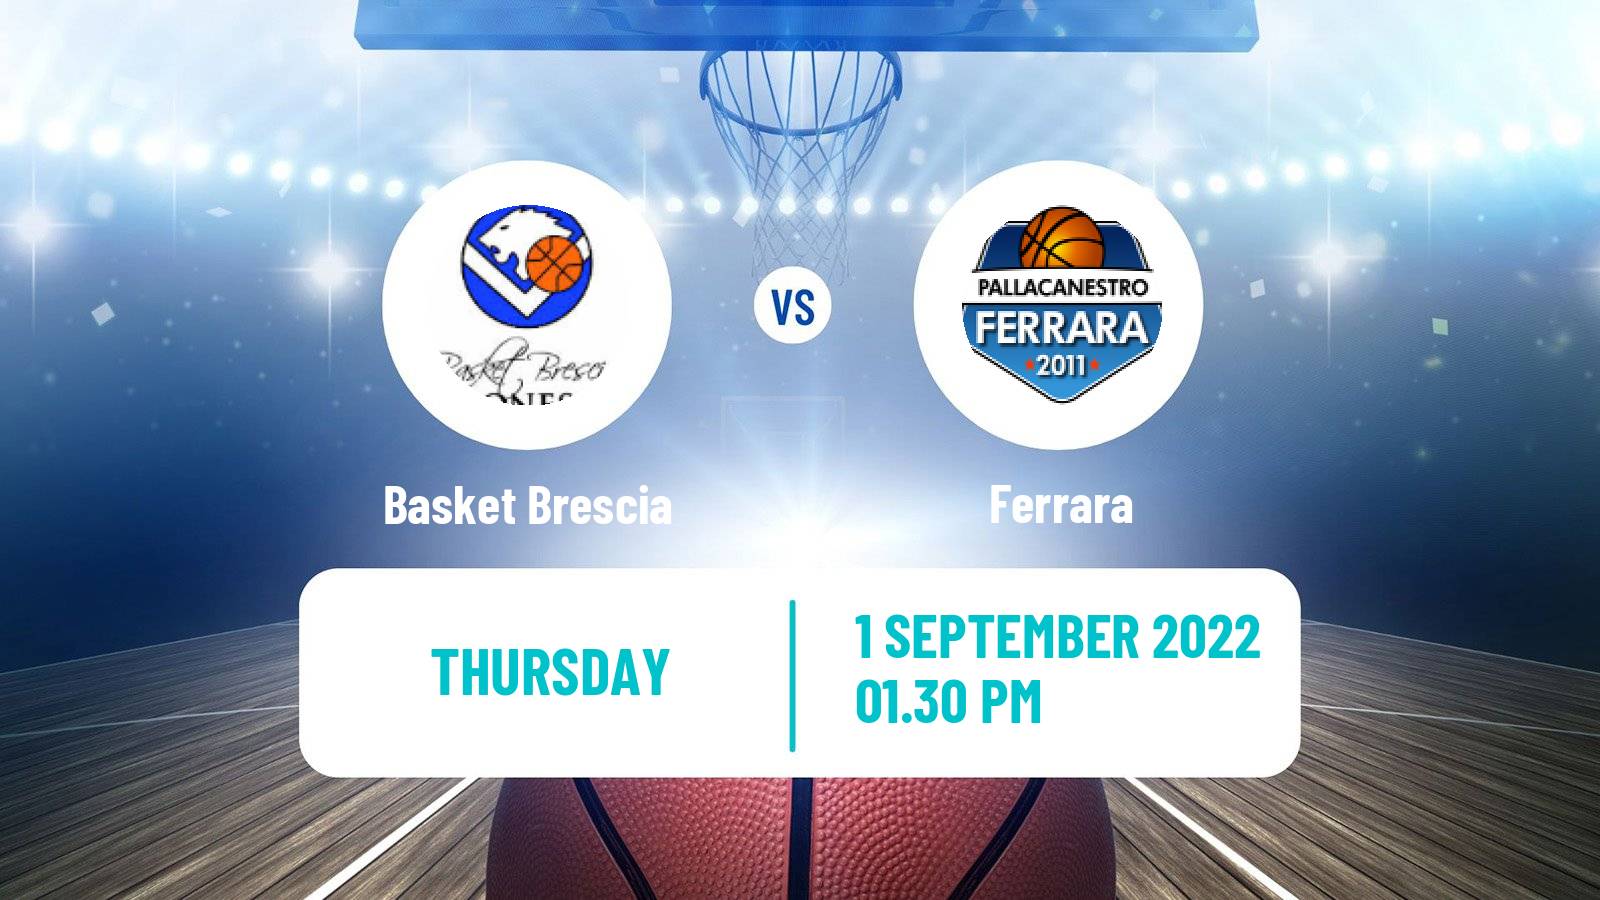 Basketball Club Friendly Basketball Basket Brescia - Ferrara